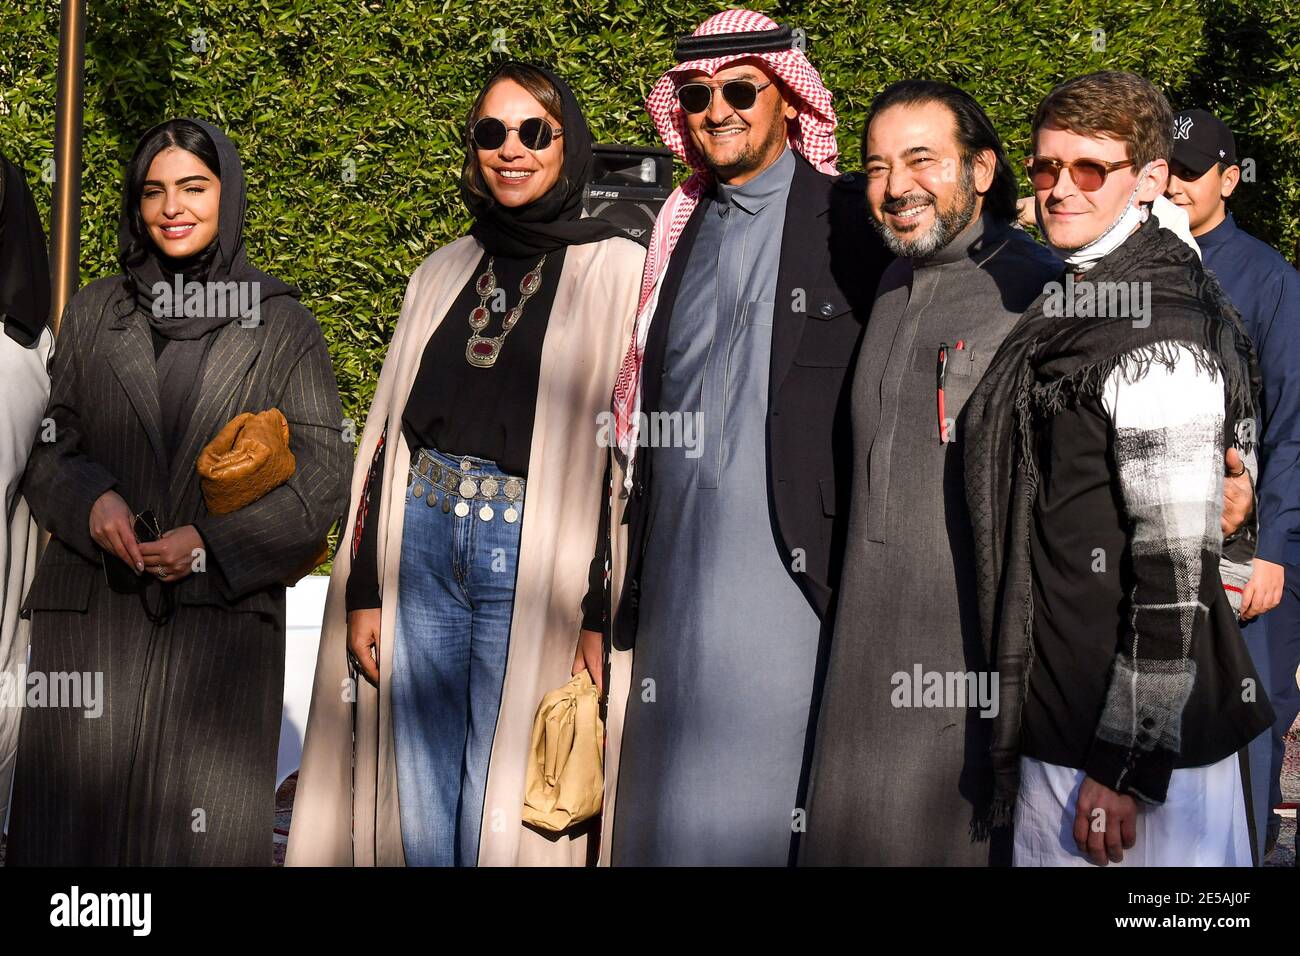 Saudi Princess High Resolution Stock Photography And Images Alamy